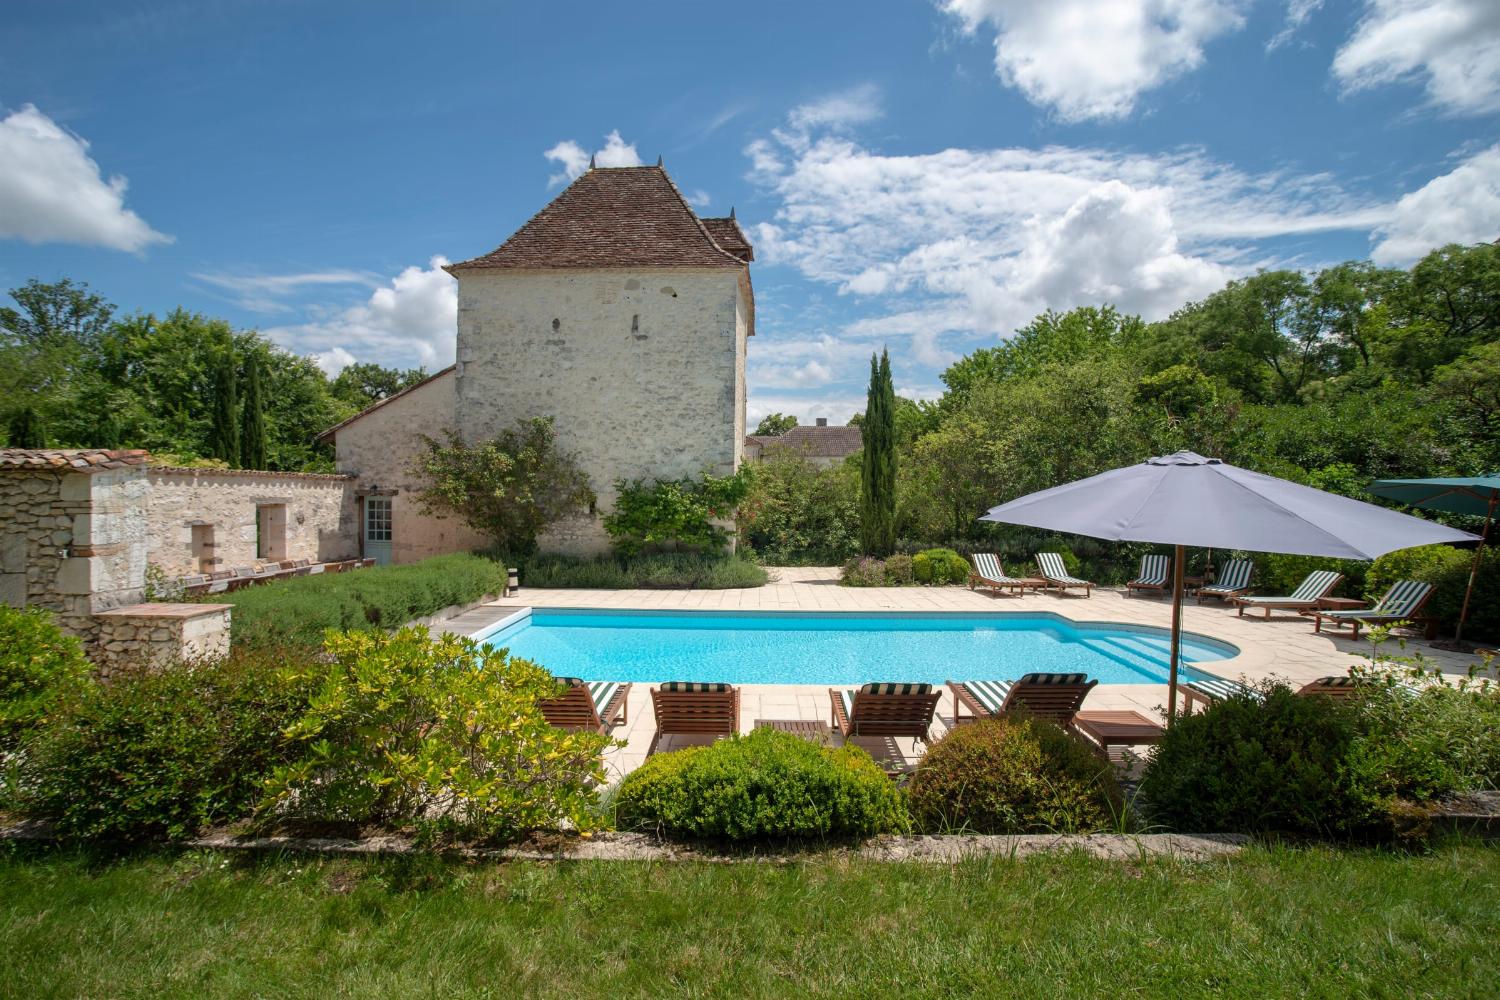 Location de vacances en Nouvelle-Aquitaine avec piscine privée chauffée